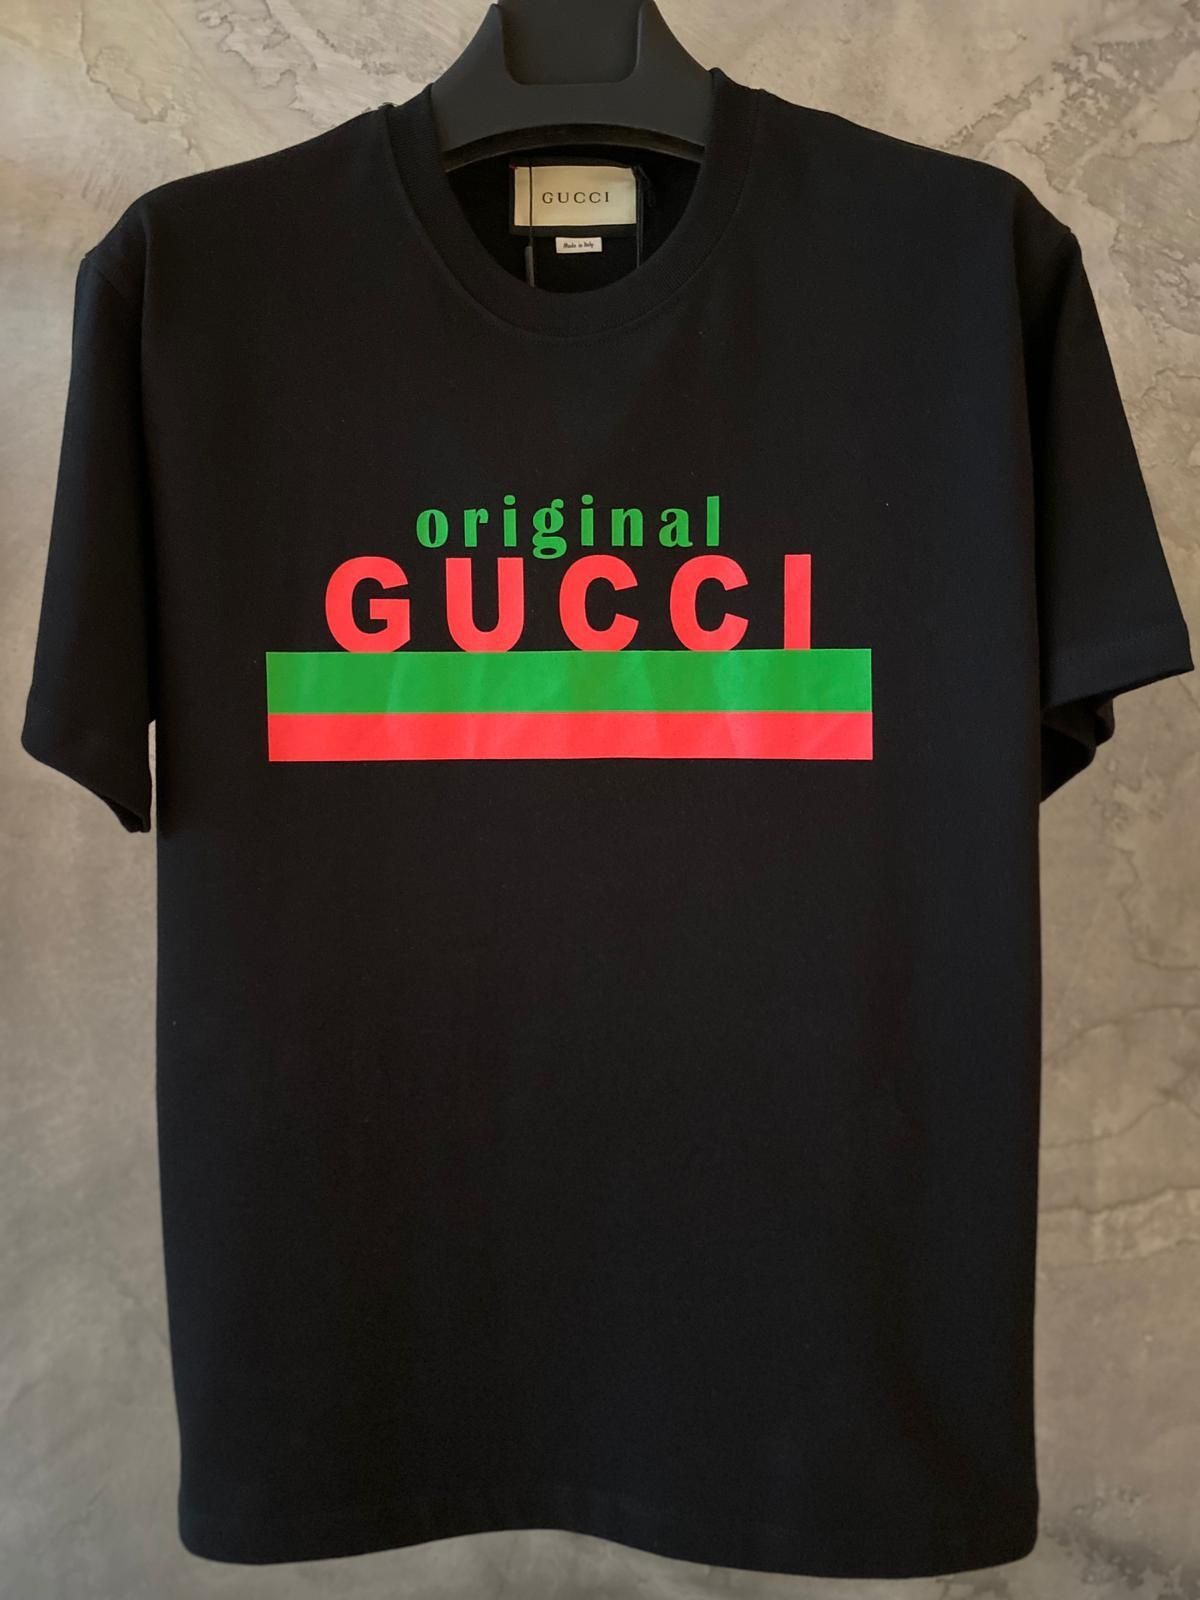 Gucci "Original" t shirt